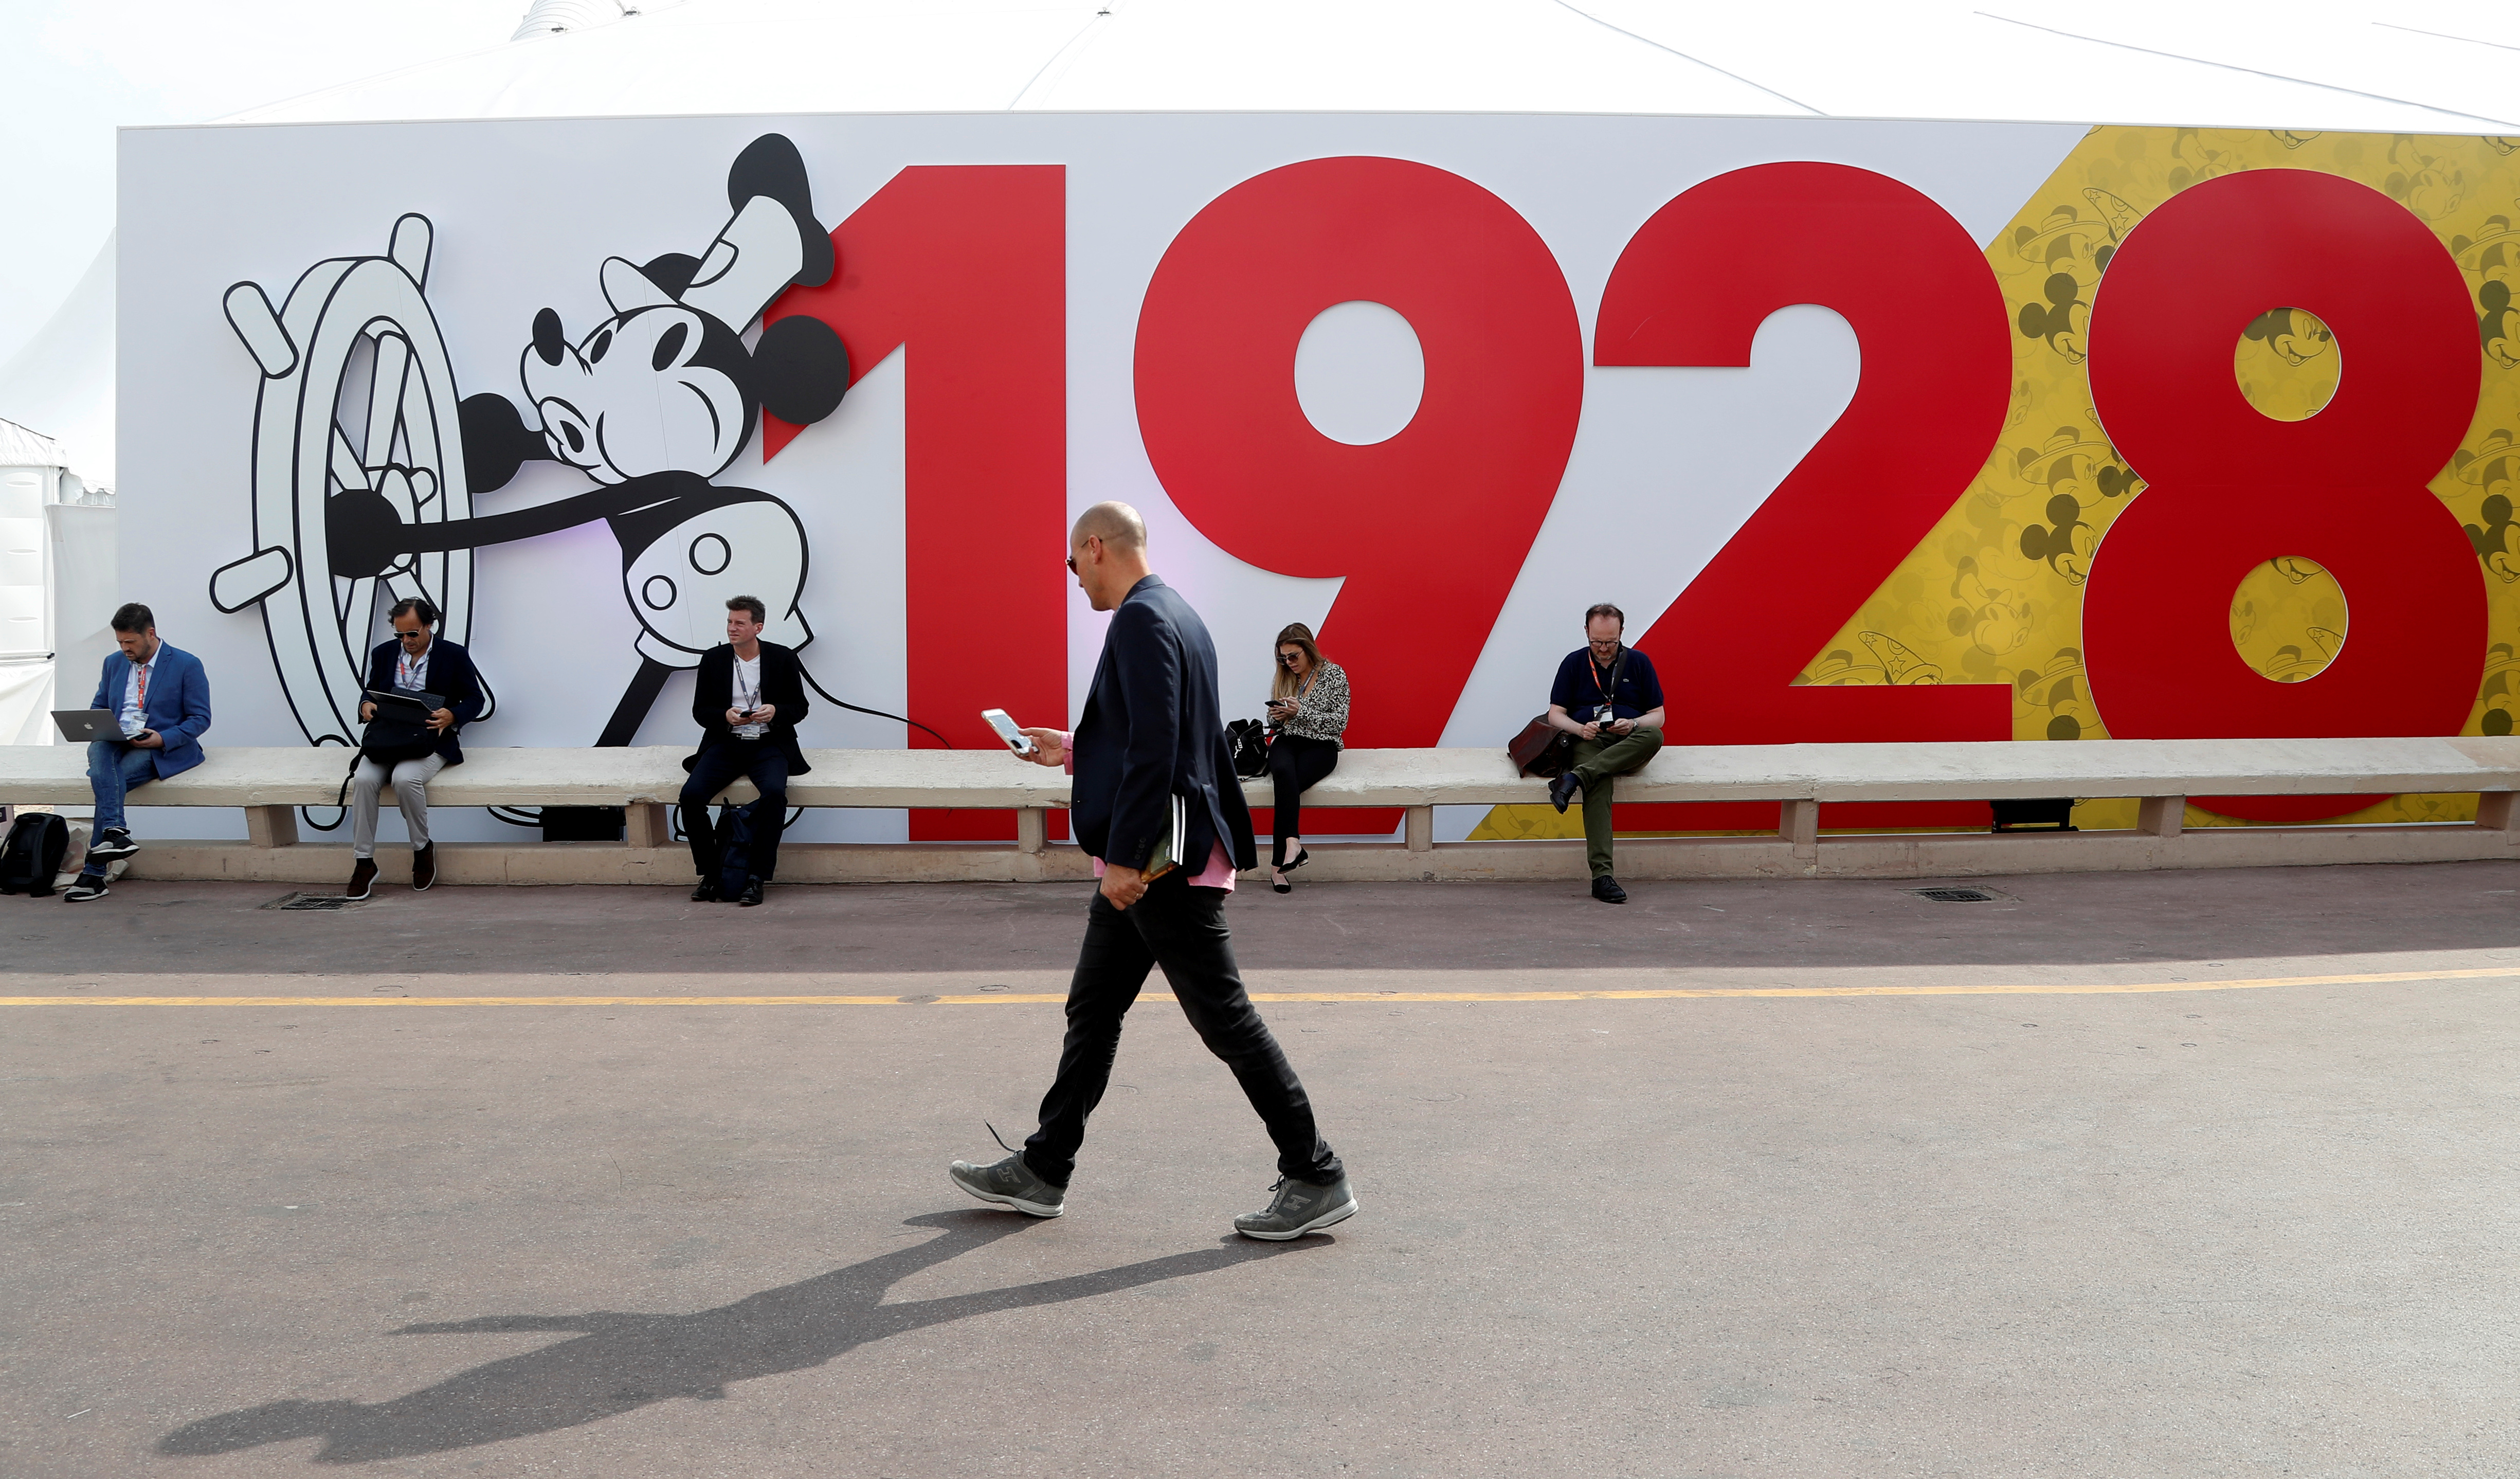 Pósters vintage de Mickey Mouse alcanzarían miles de dólares en subasta